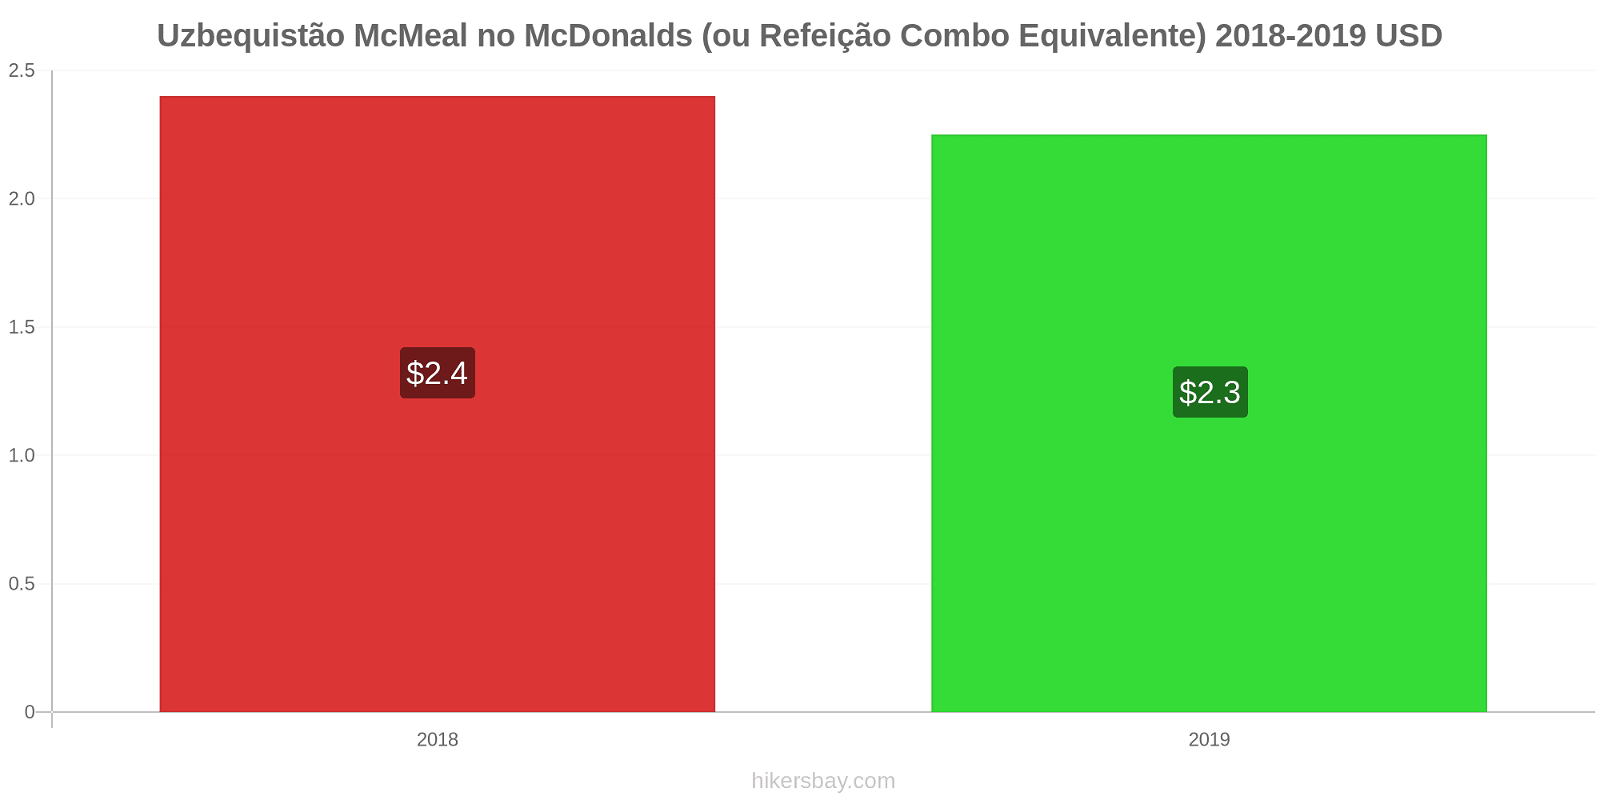 Uzbequistão variação de preço McMeal no McDonald ' s (ou refeição Combo equivalente) hikersbay.com